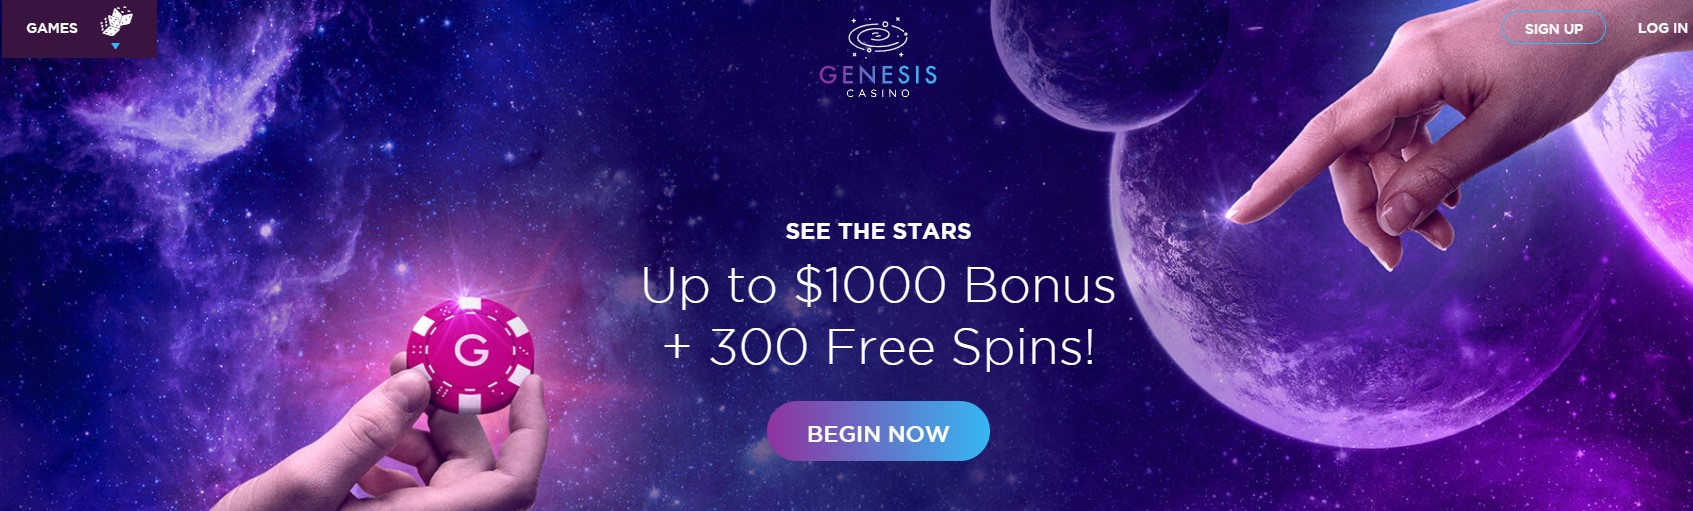 Genesis Casino (مكافأة بنسبة 100٪ حتى 1000 دولار + 300 دورة إضافية!)